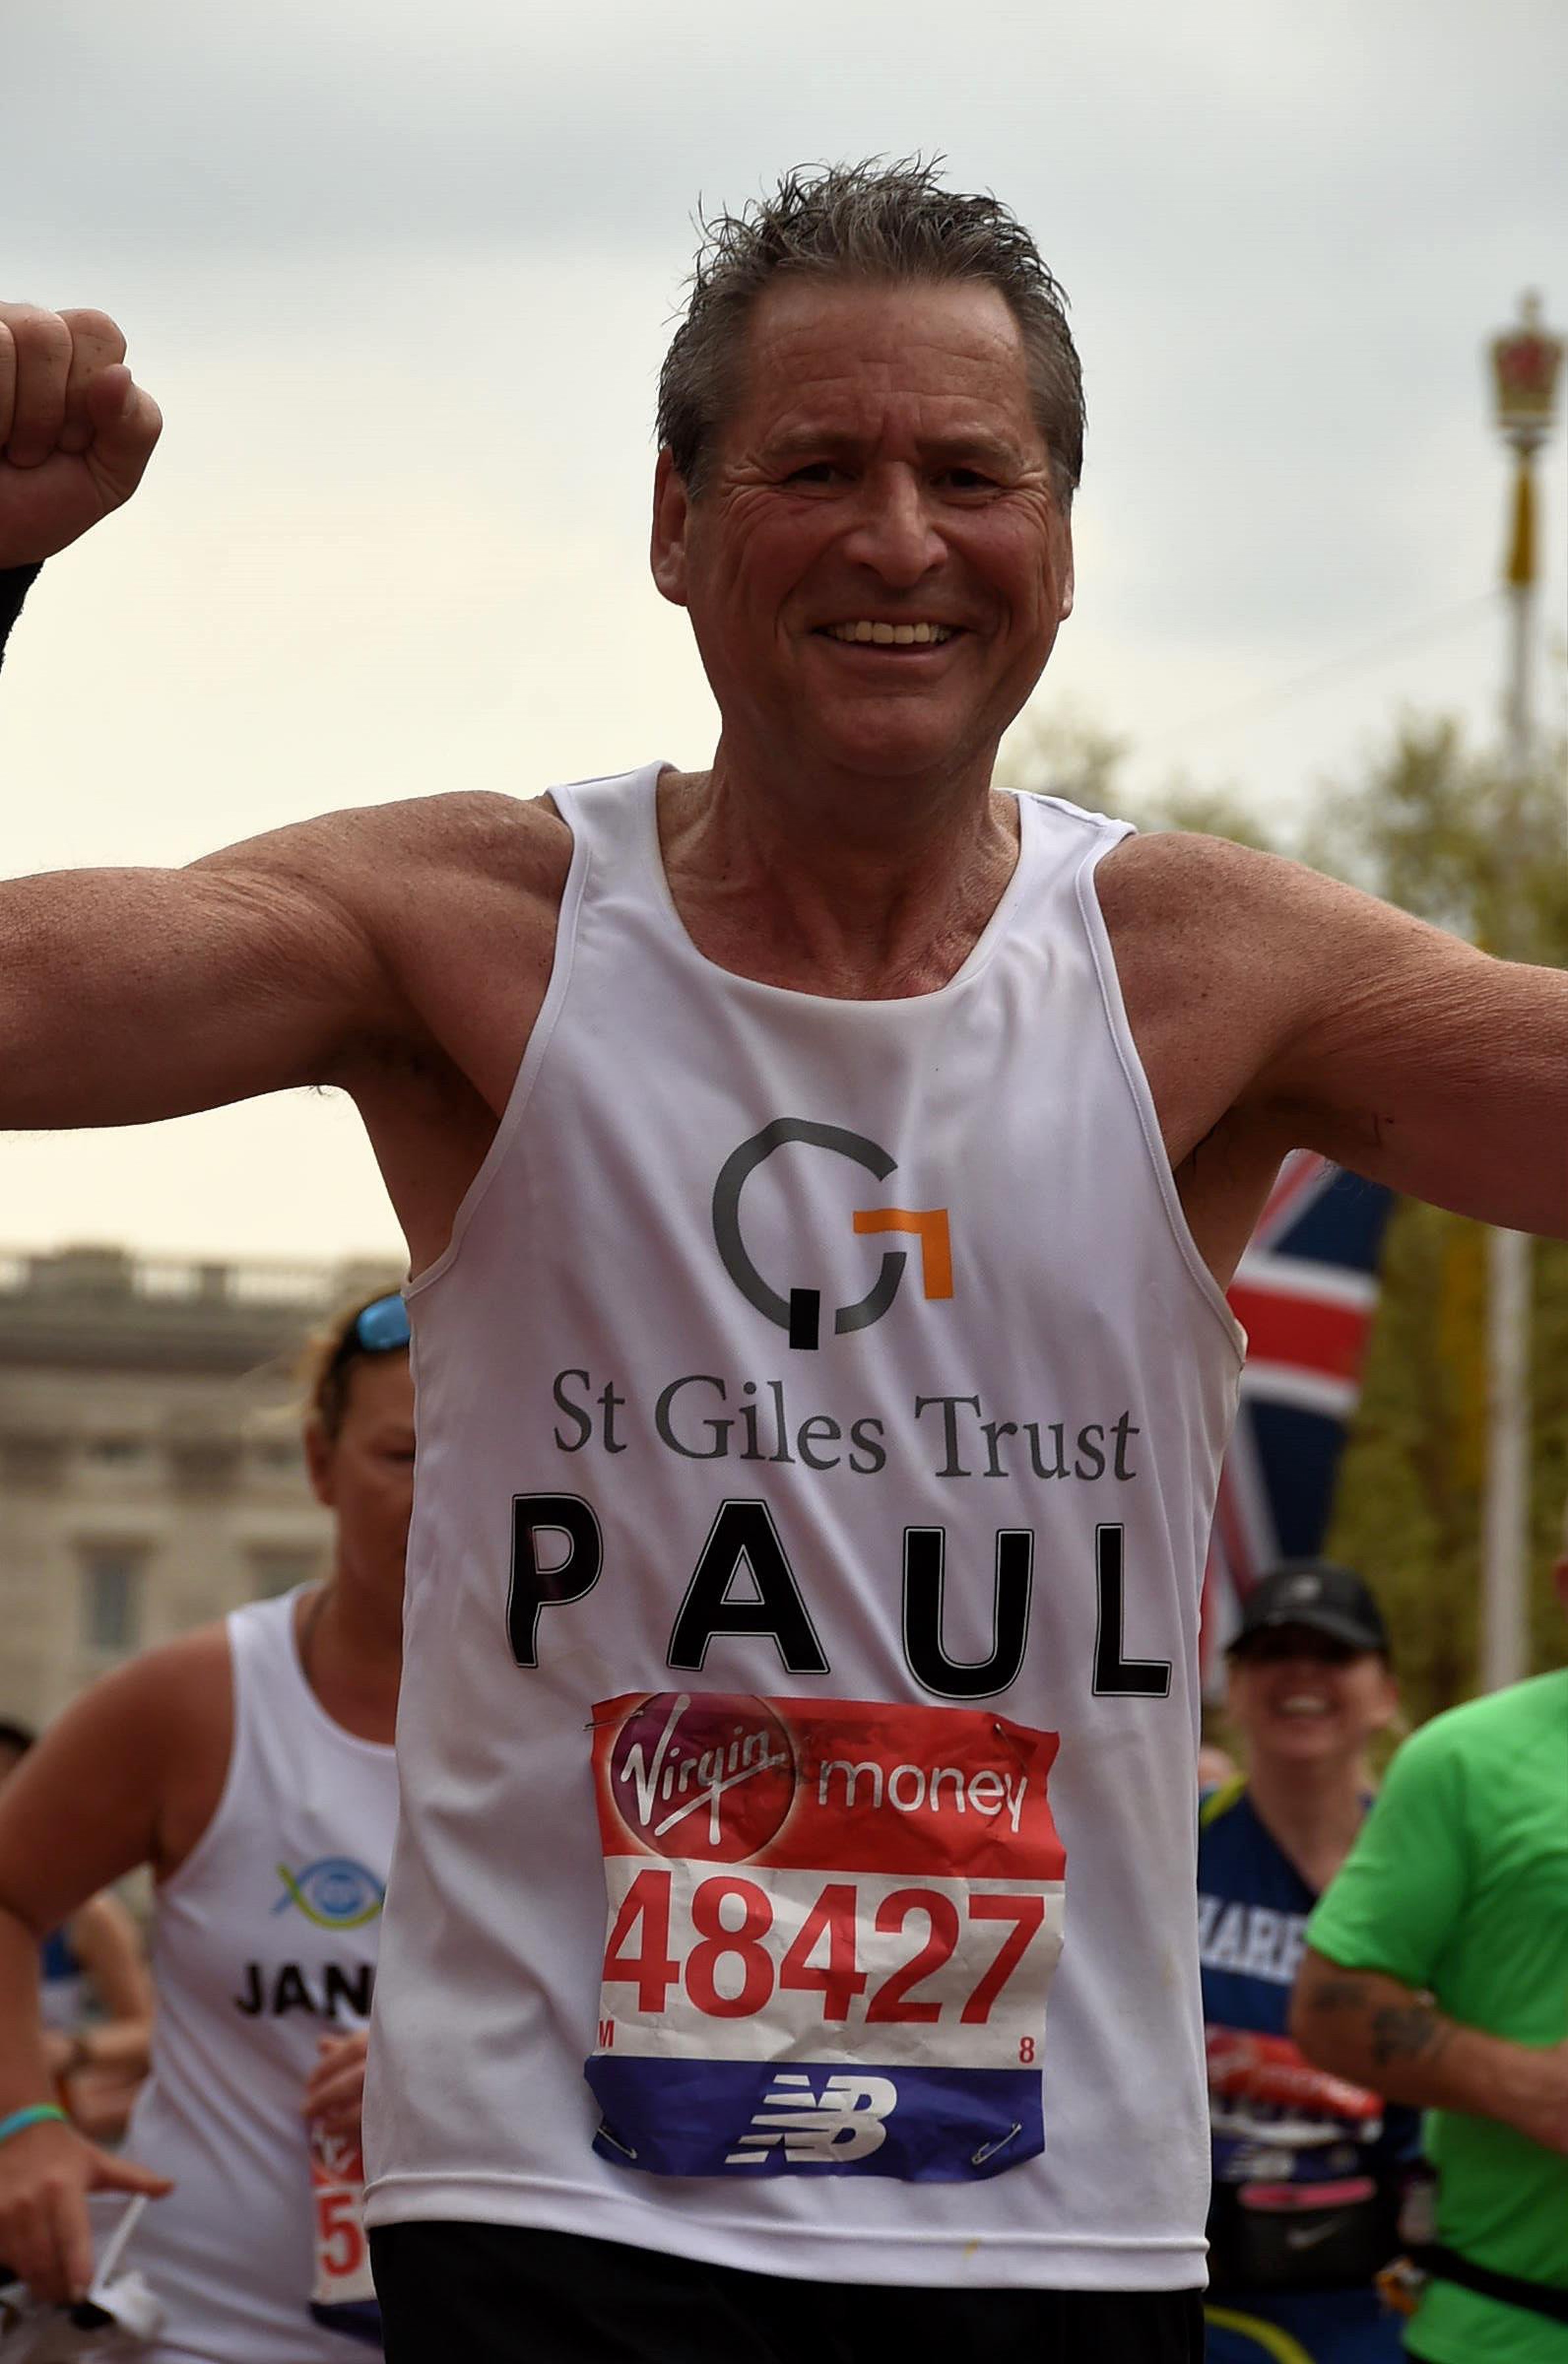 Paul - London Marathon 2018